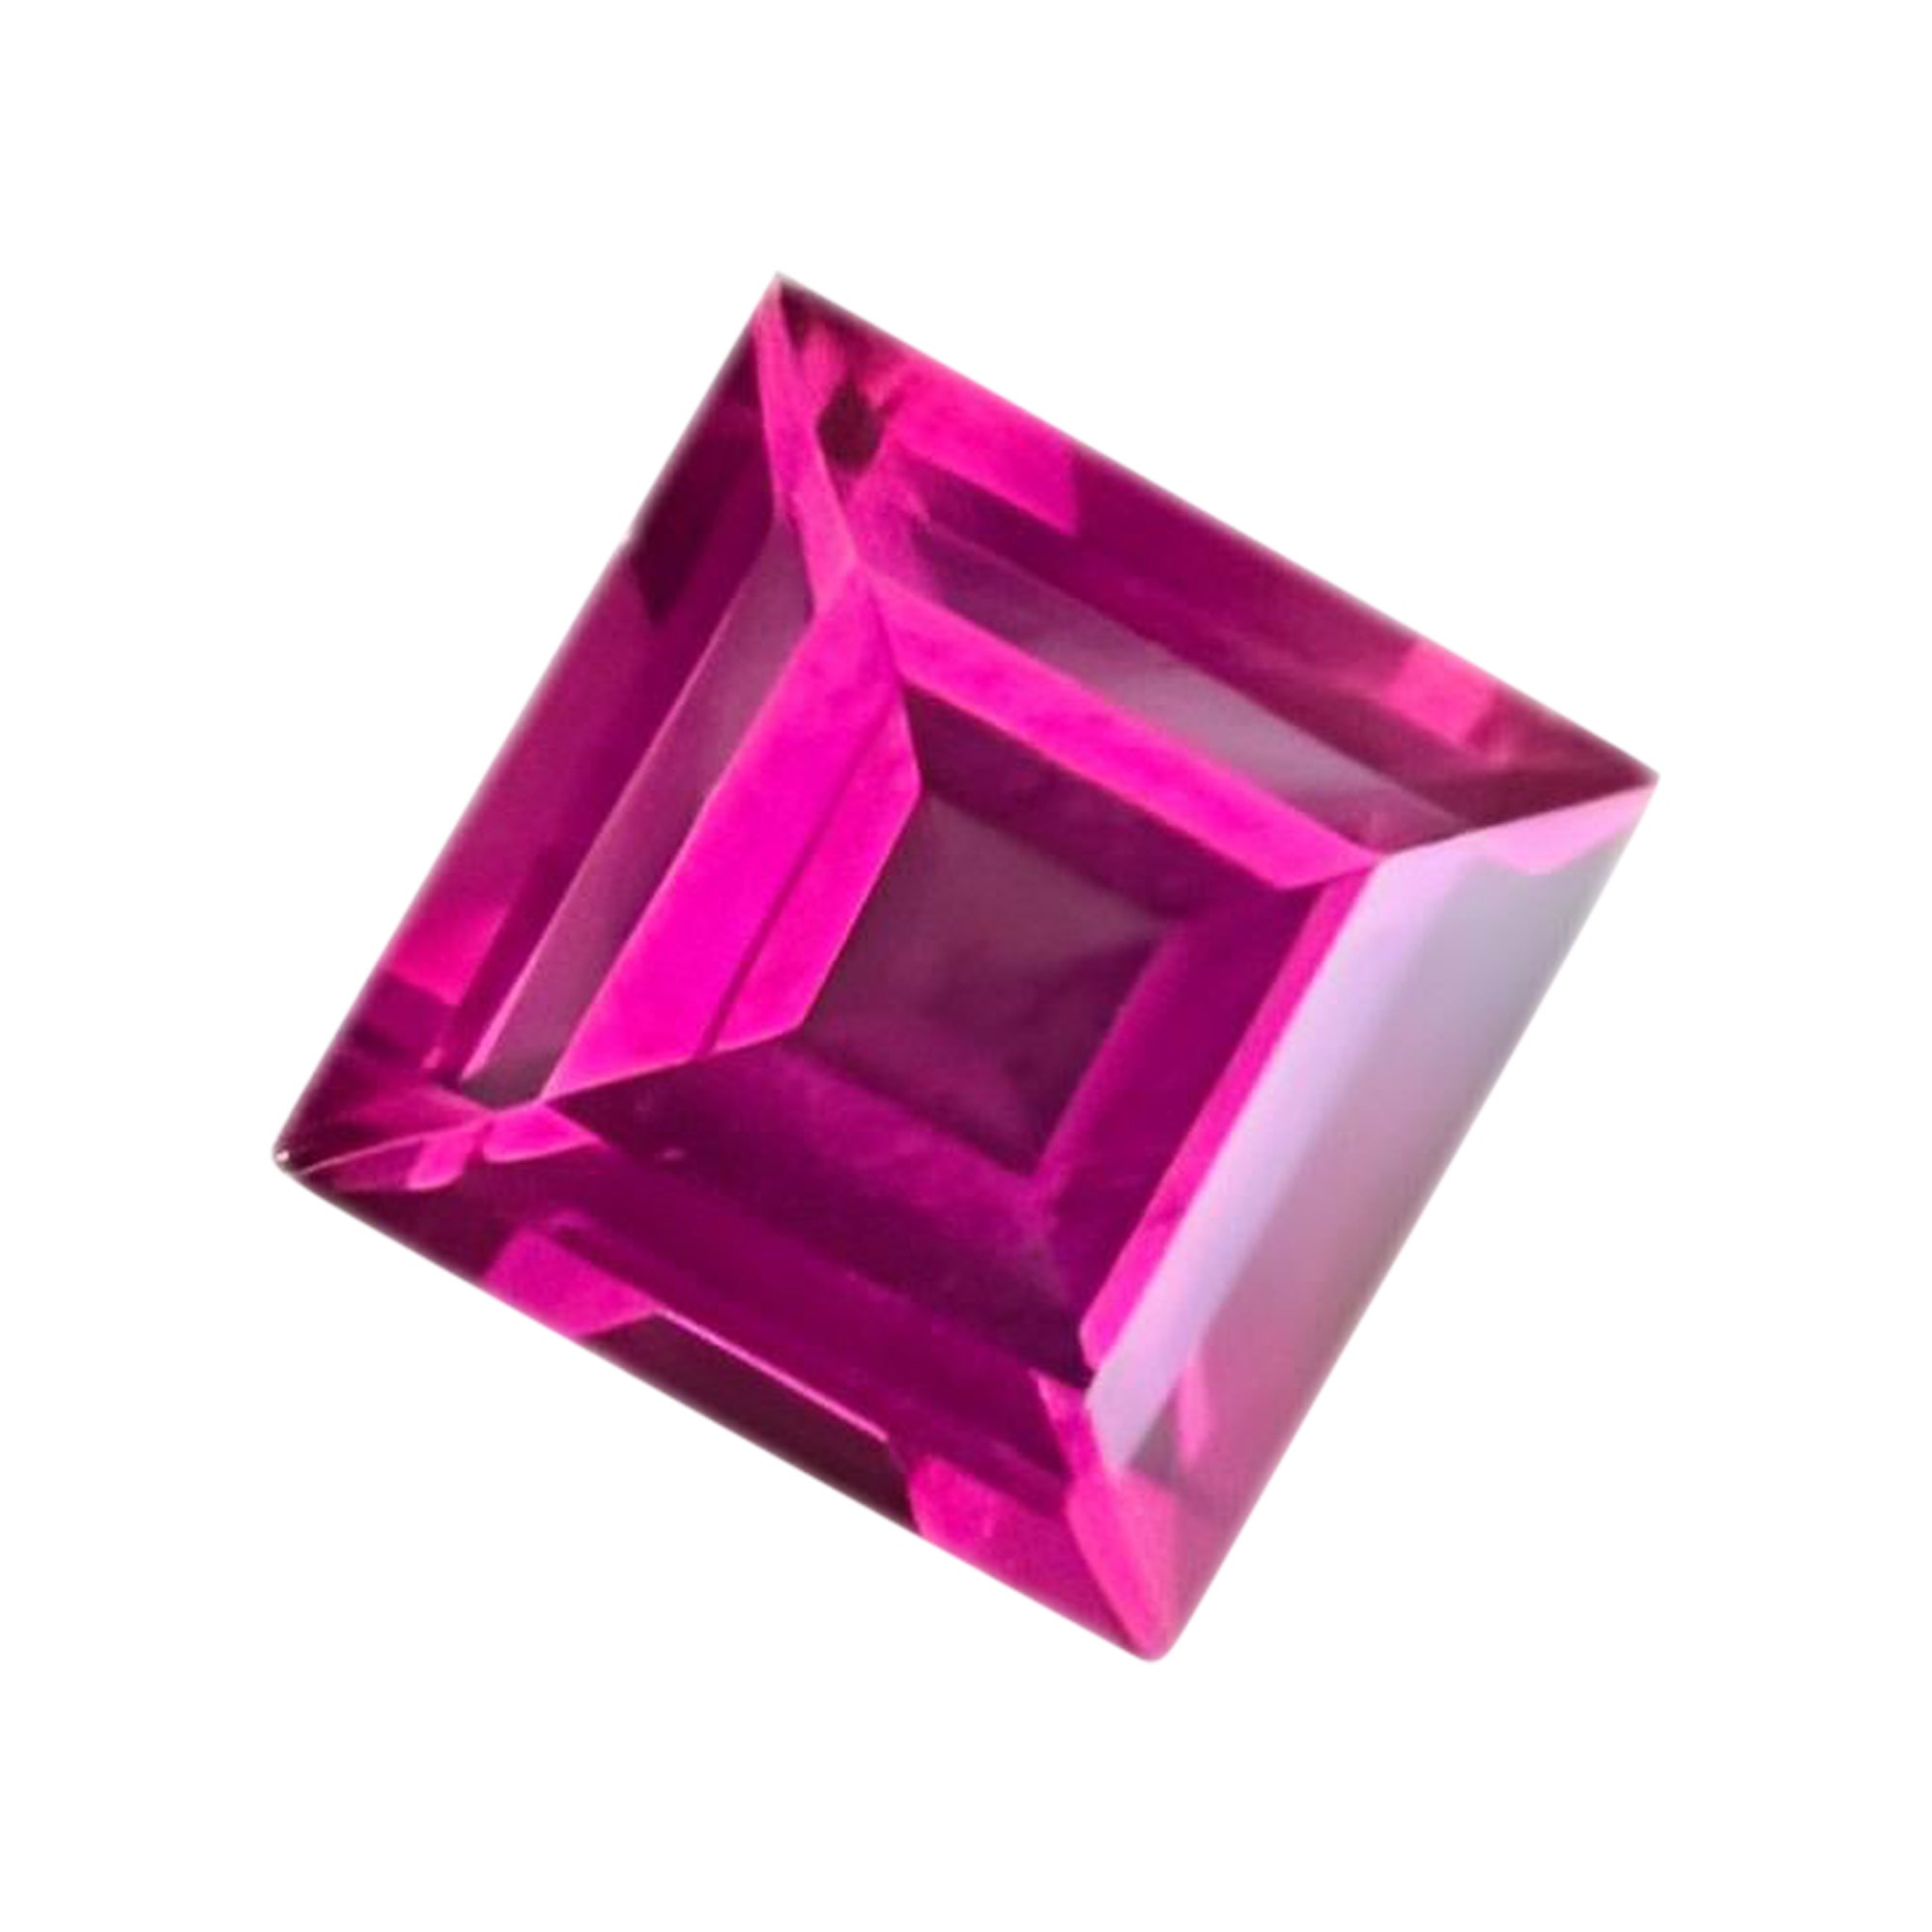 Hot Pink Garnet 2.25 carat Square cut Natural Madagascar's Loose Garnet Gemstone For Sale